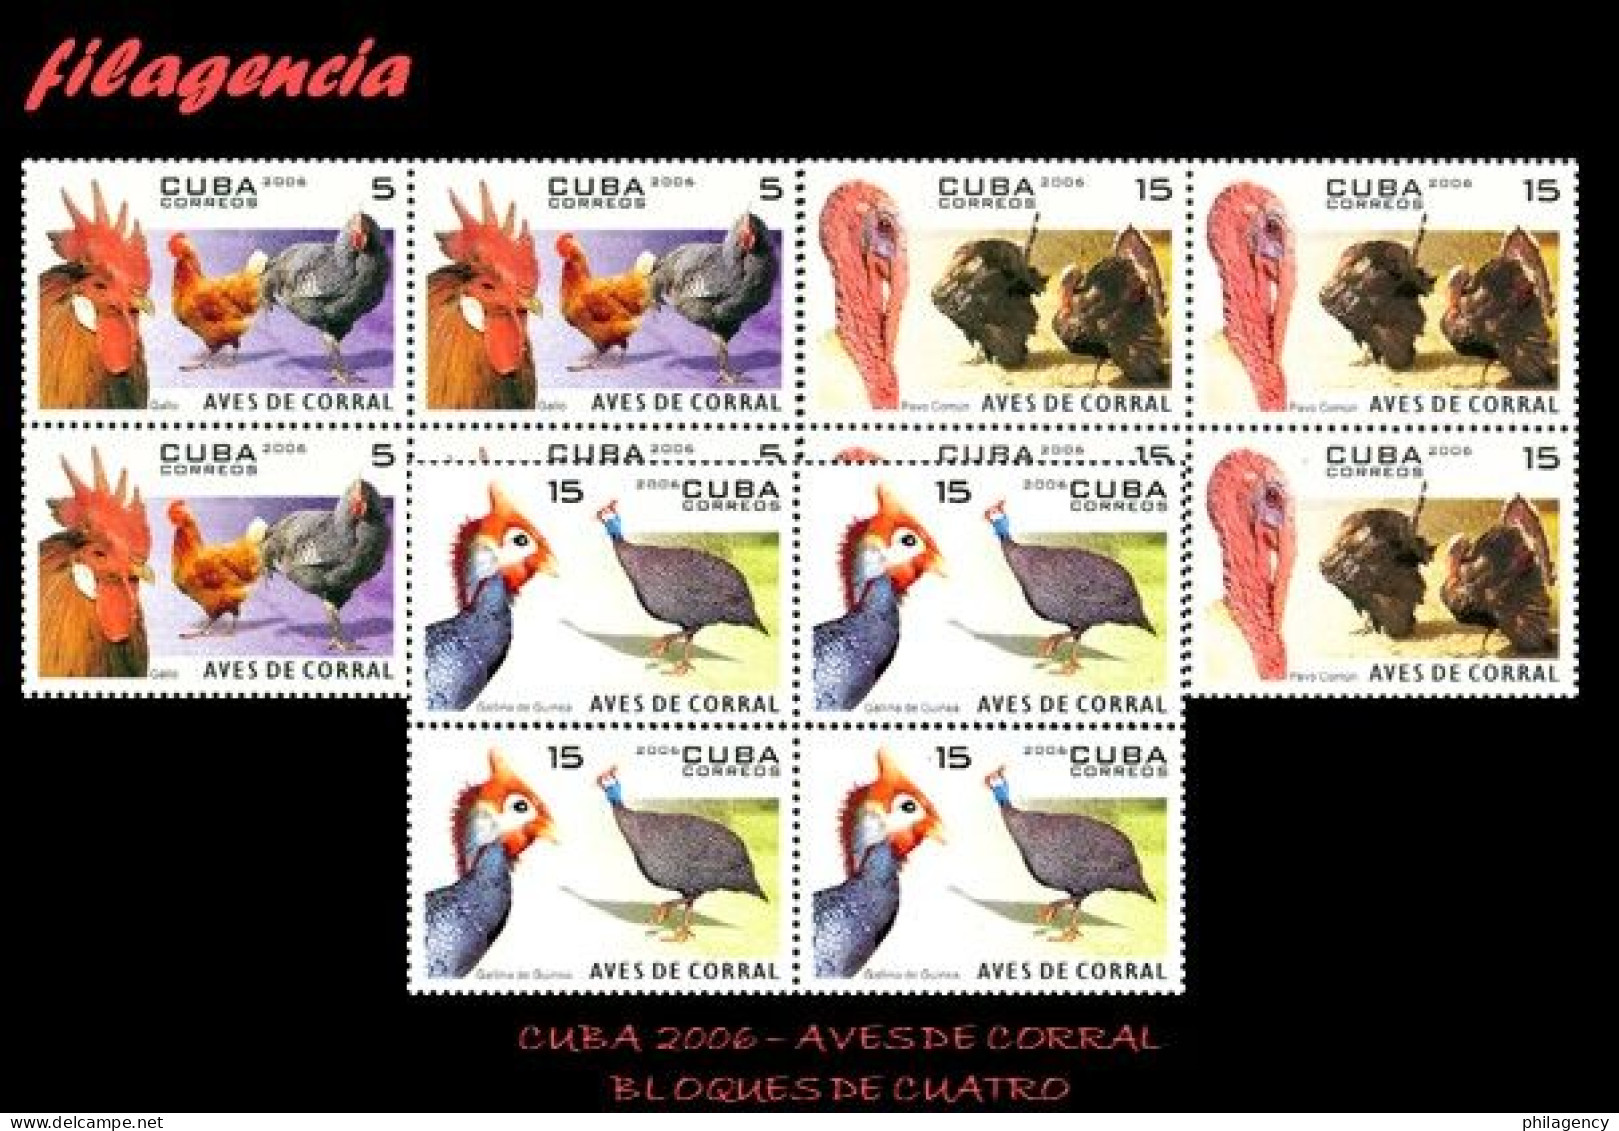 CUBA. BLOQUES DE CUATRO. 2006-13 FAUNA. AVES DE CORRAL - Ongebruikt